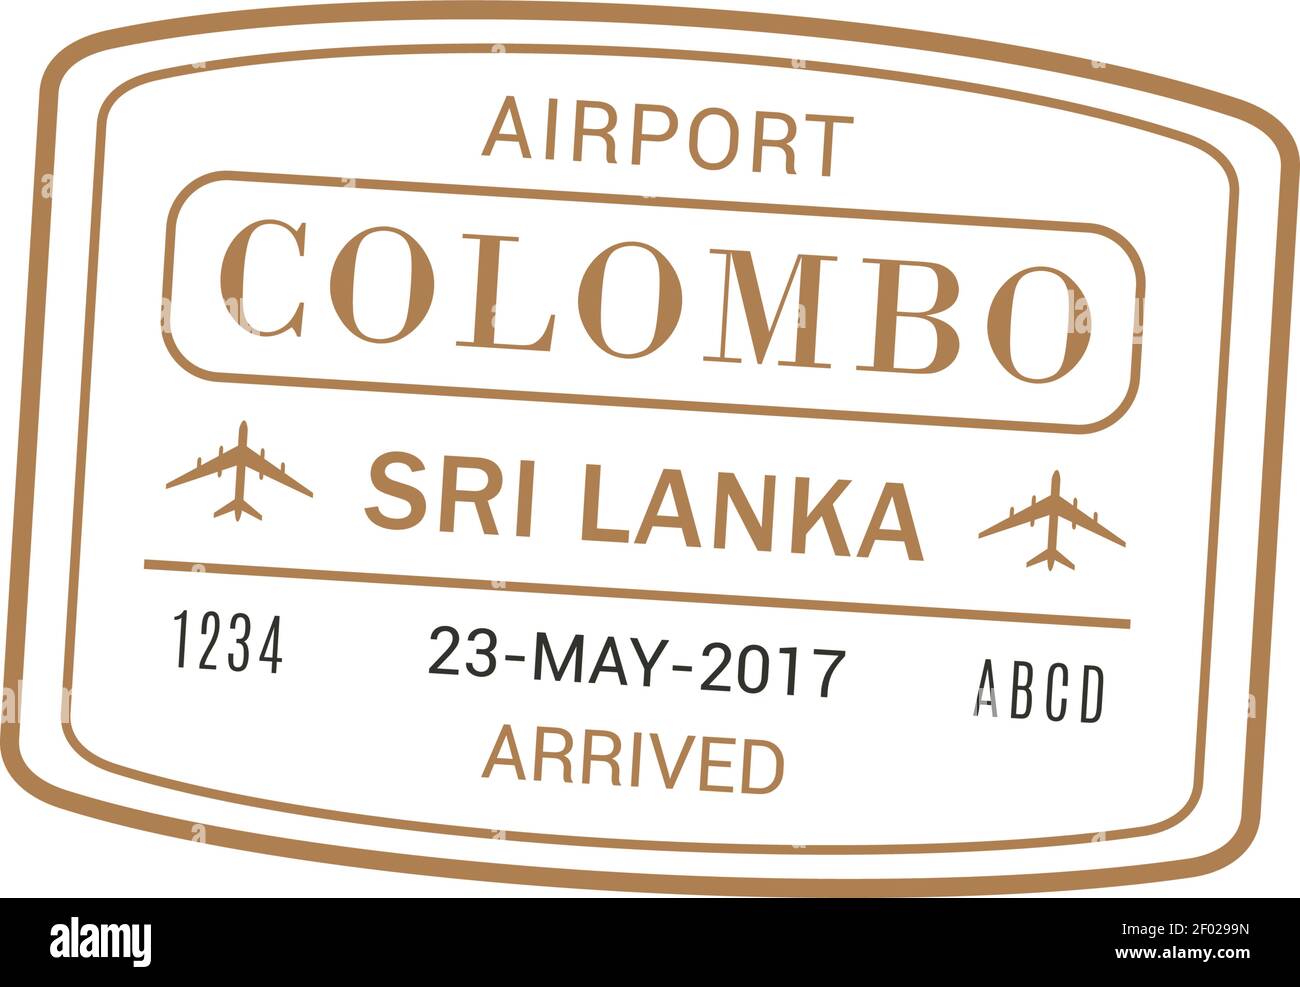 Sri Lankan Isolated Akka